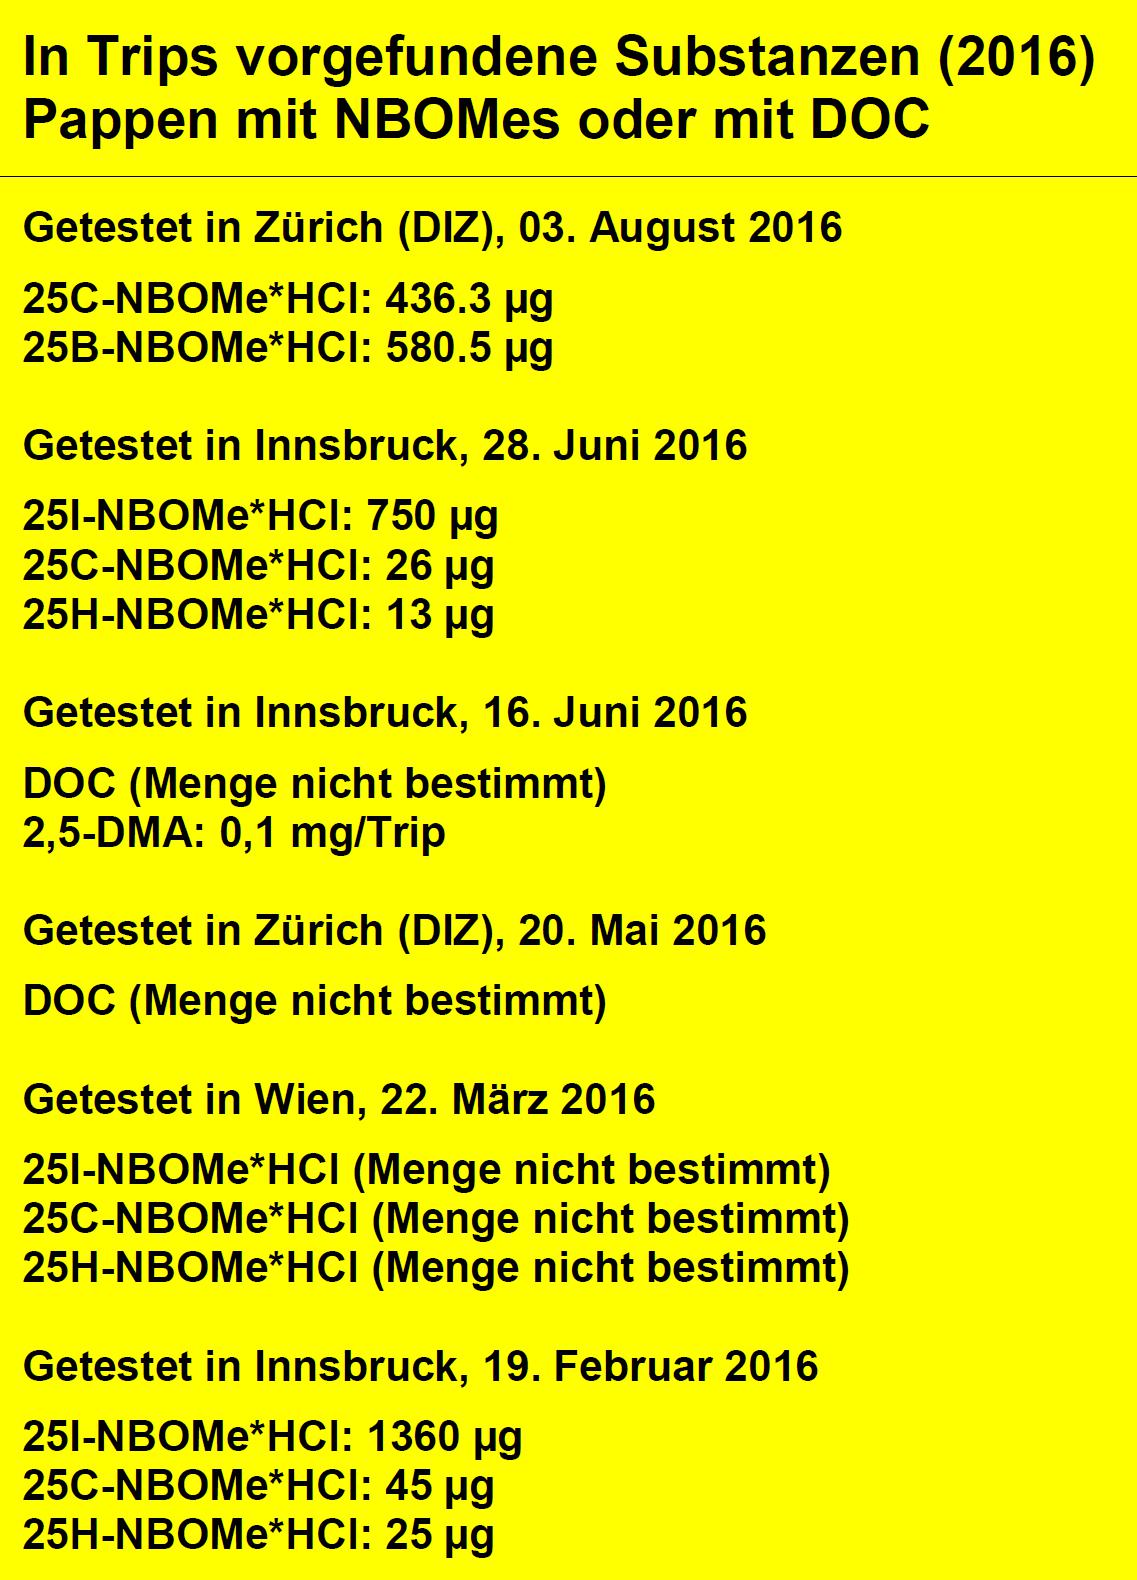 Abbildung 1 zeigt die Substanzen, die auf Papiertrips im Jahr 2016 vorgefunden wurden, die kein LSD enthielten. Datenquelle: Warnungen von Safer Party in Zürich.